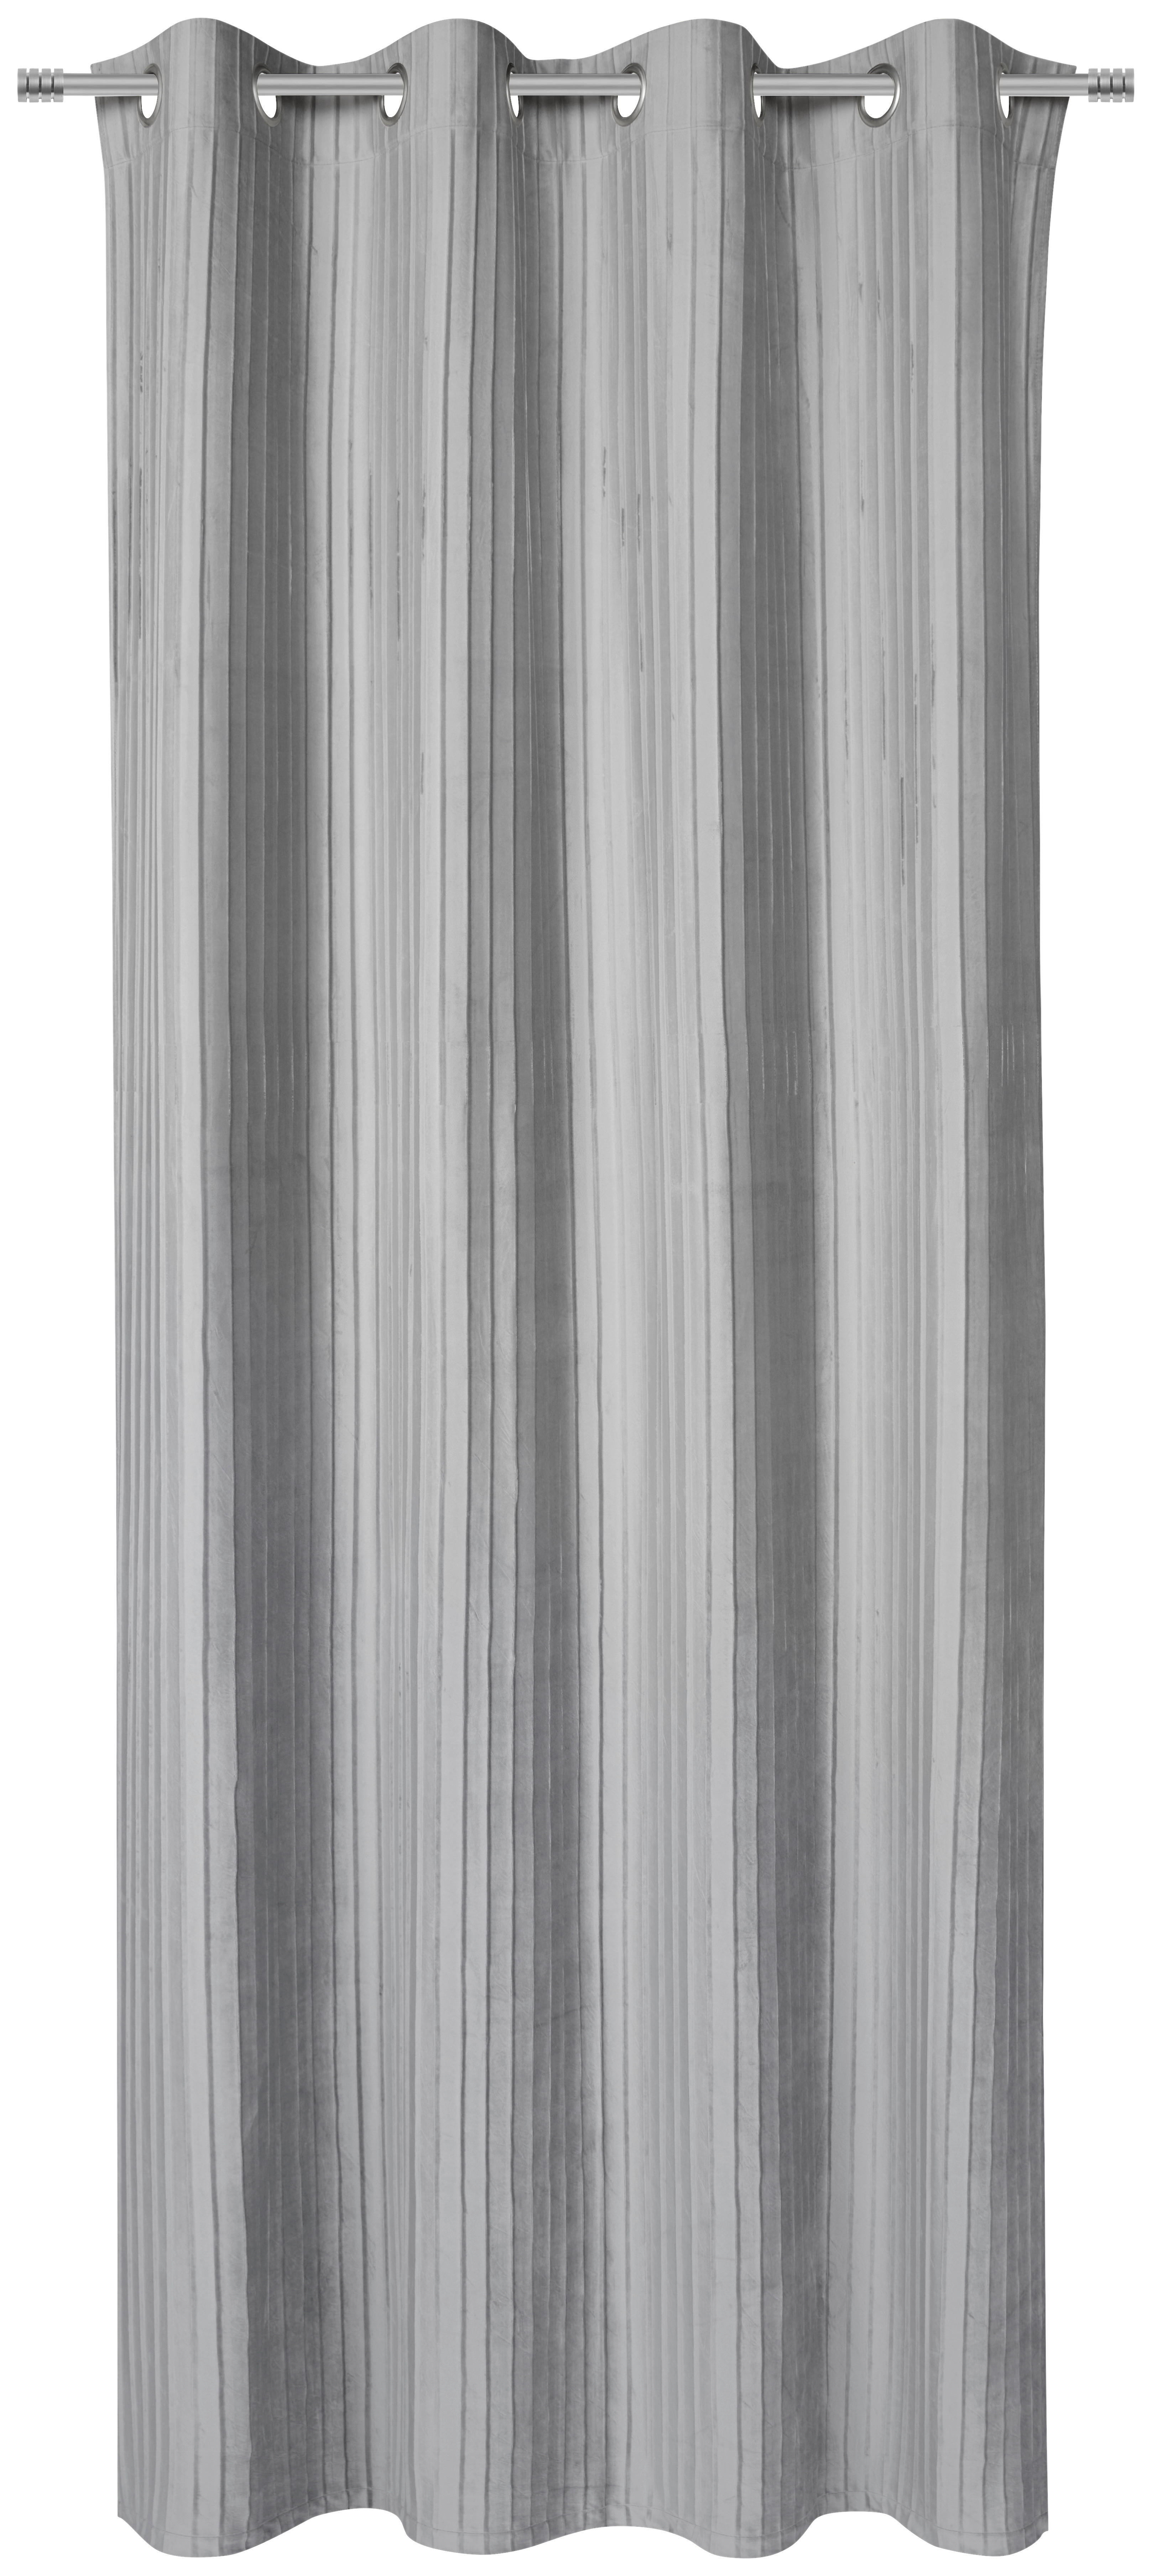 RINGLIS FÜGGÖNY Részben fényzáró  - Ezüst, Design, Textil (135/245cm) - Esposa